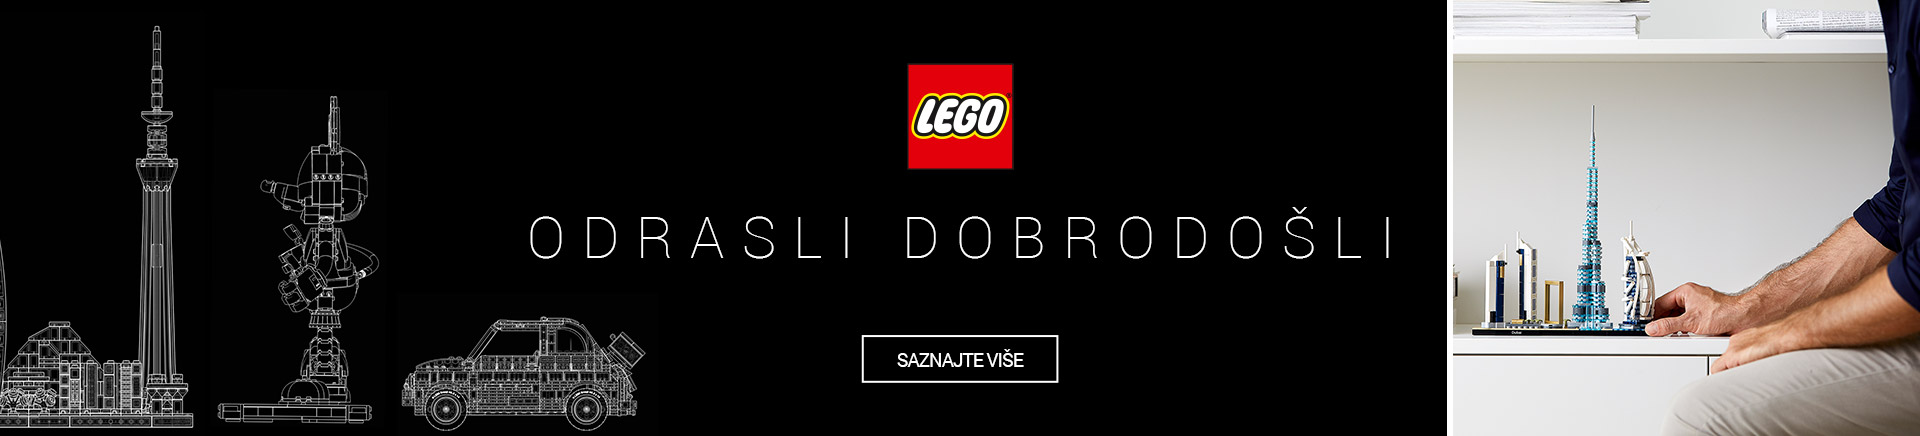 LEGO_odrasli dobrodosli MOBILE-380-X-436.jpg